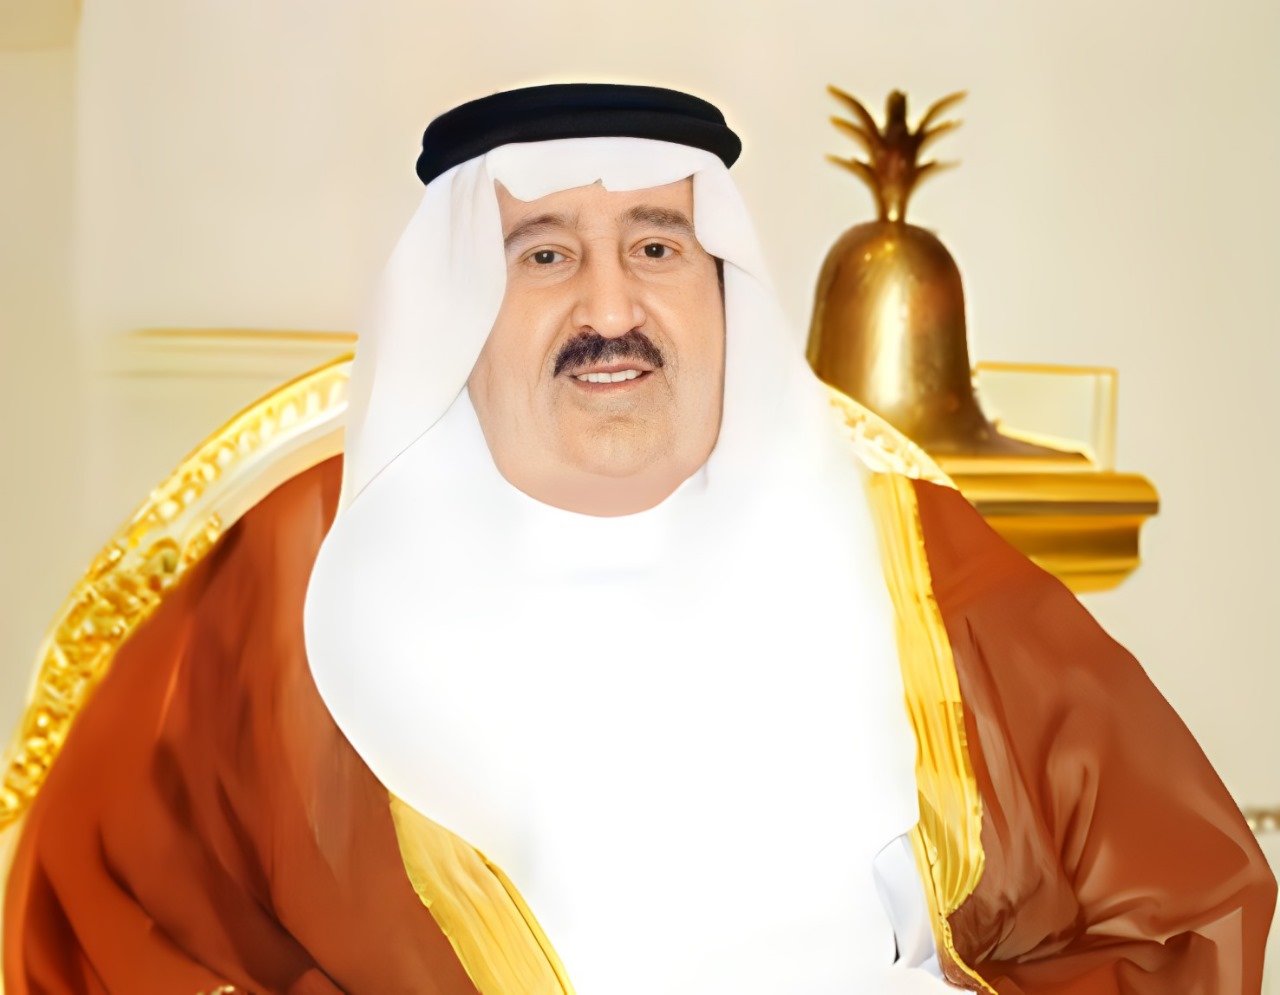 الأمير فواز بن عبدالعزيز آل سعود أحد الأمراء الذين شكلوا حركة الأمراء الأحرار